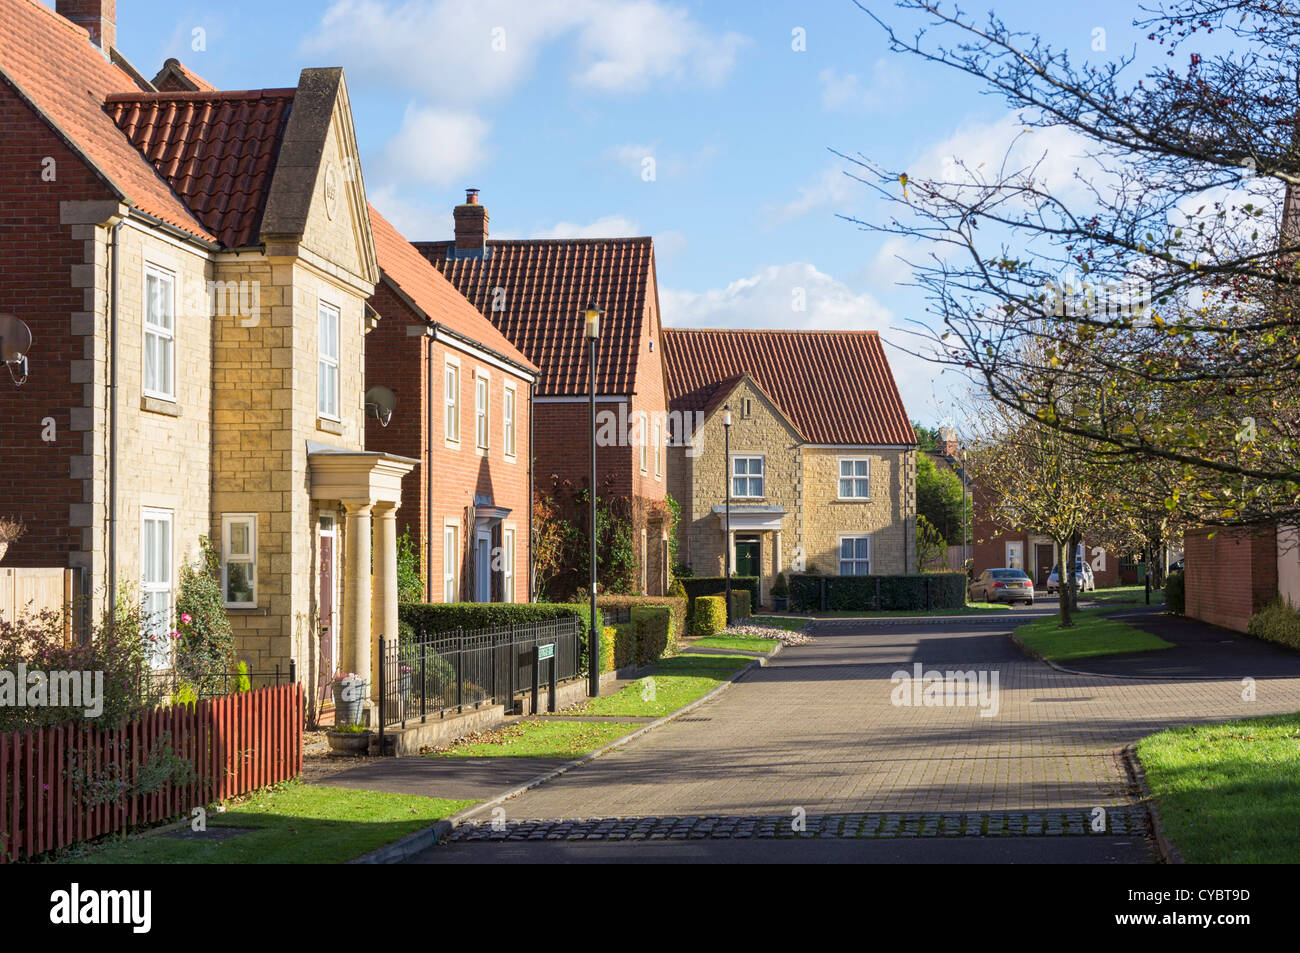 Eine typisch britische modernen Wohnungsbau Immobilien Entwicklung und Street, England, UK-Herzogtum Cornwall Entwicklung Stockfoto